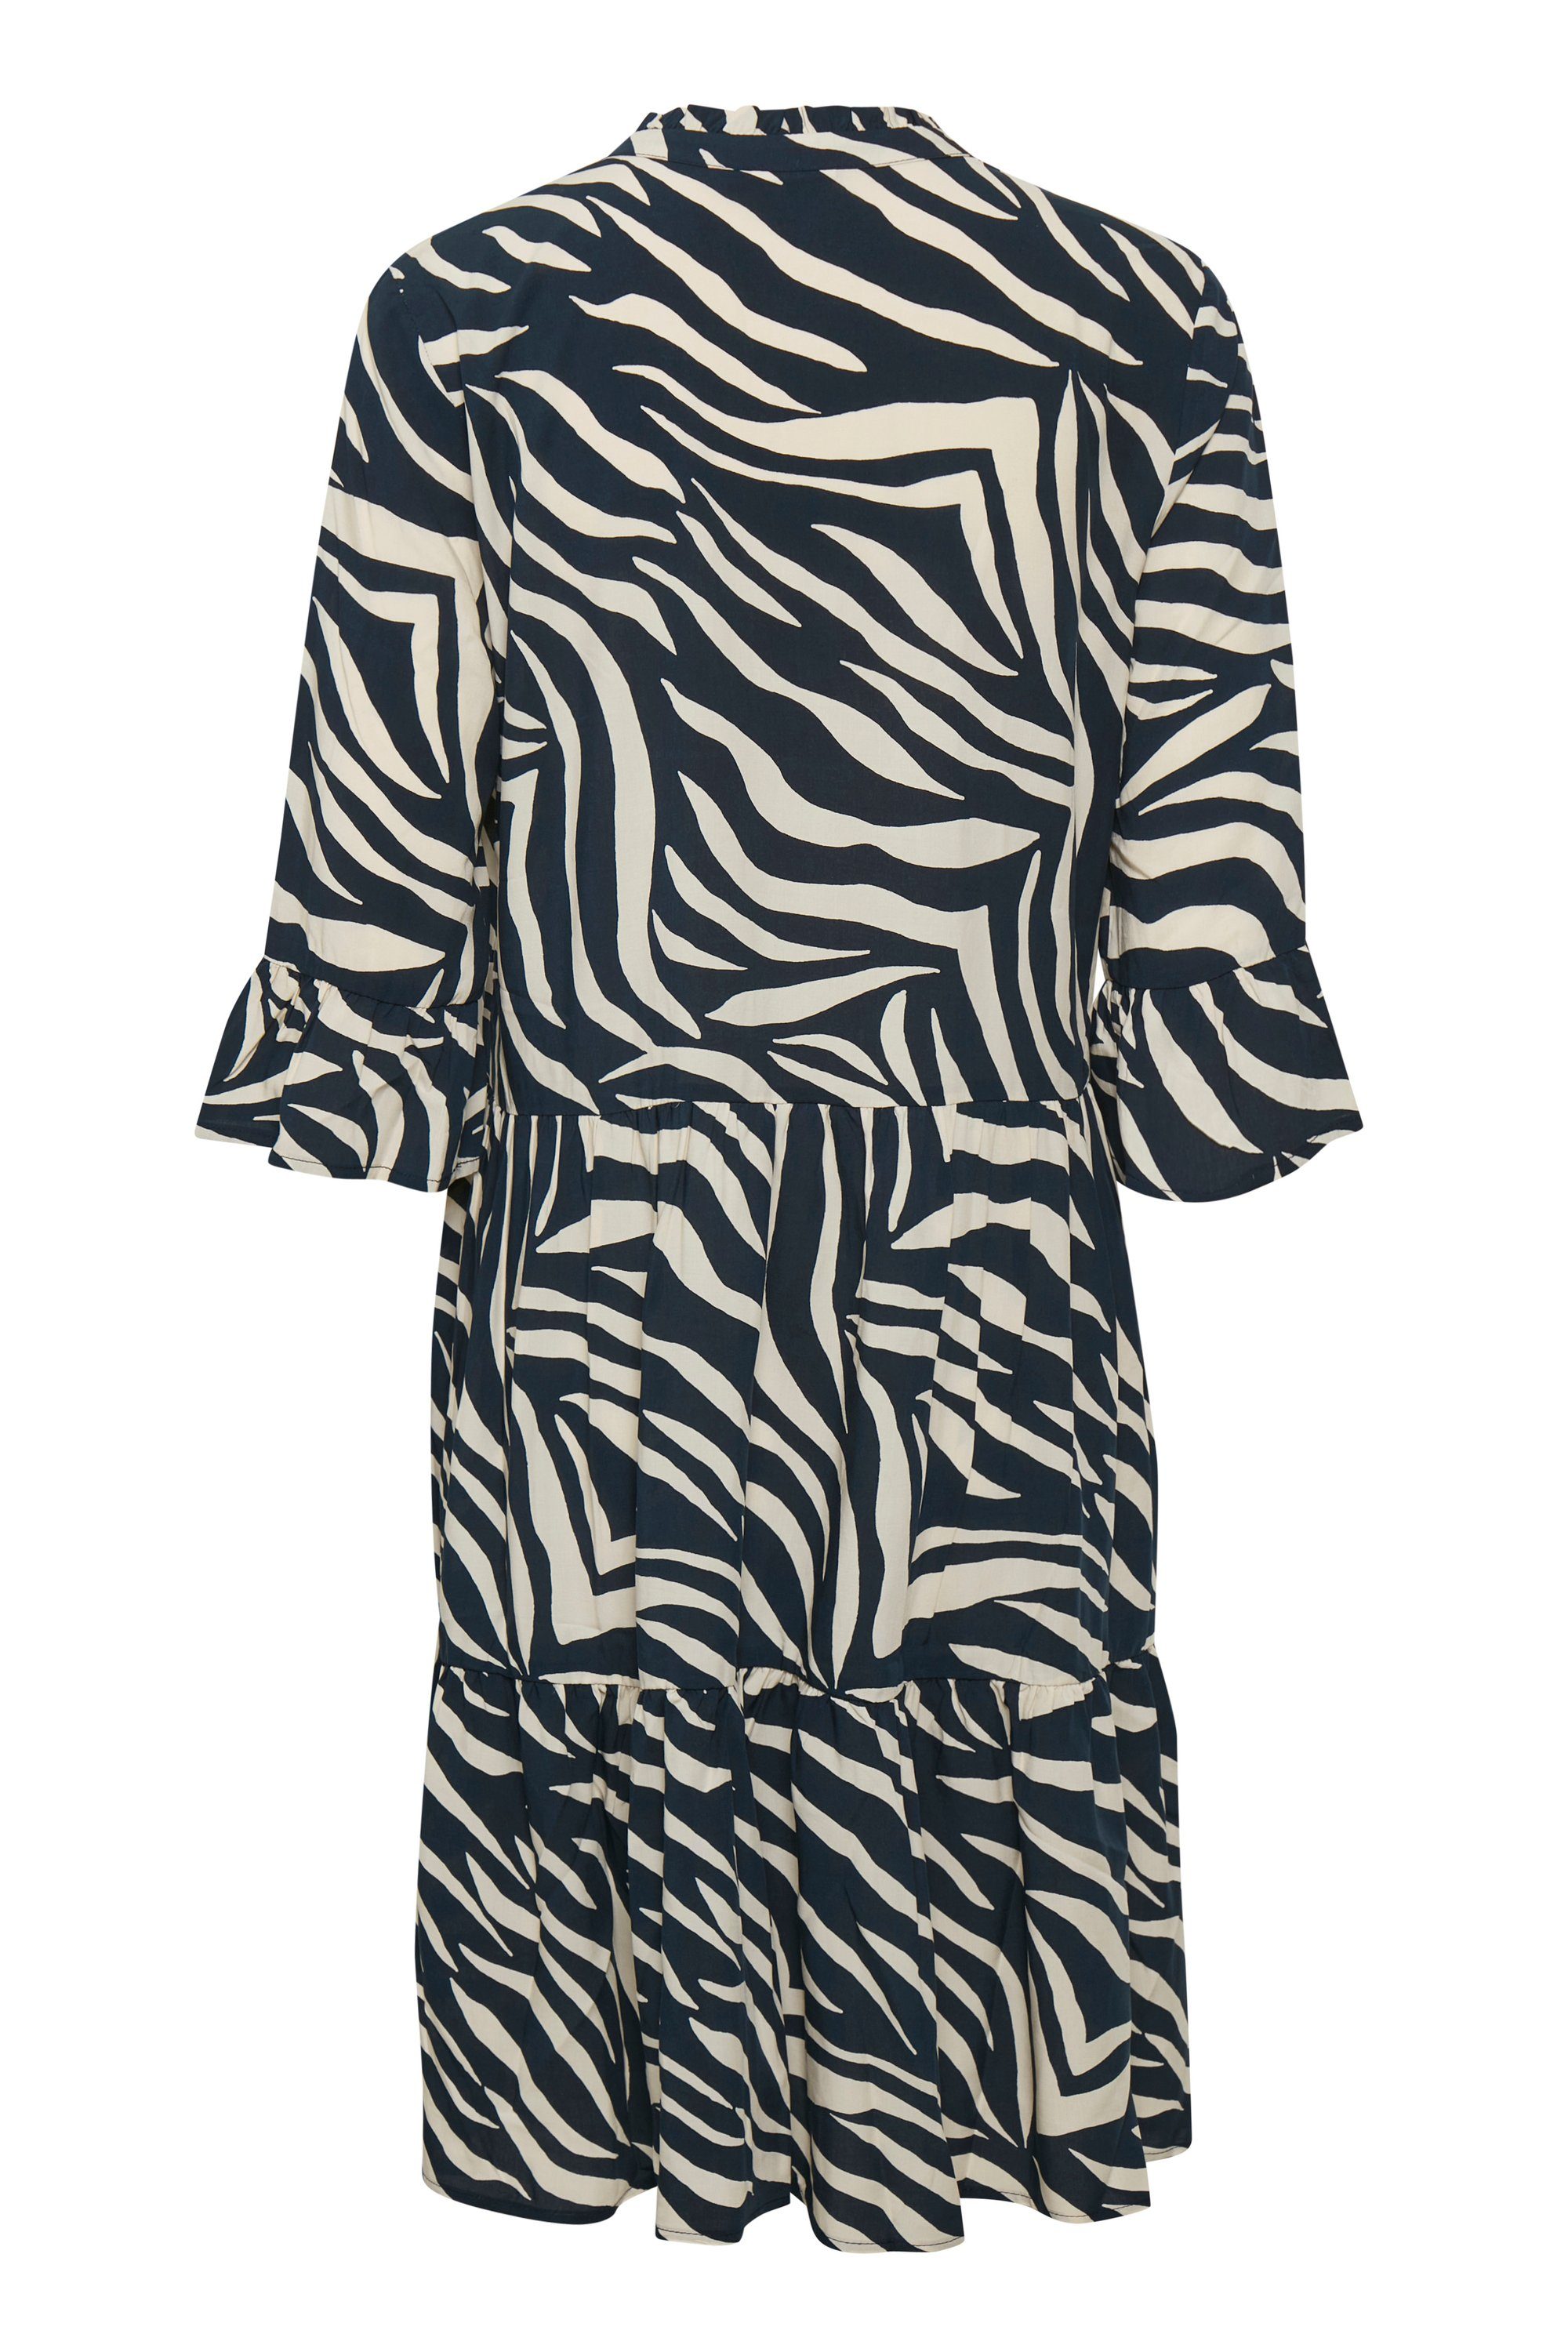 Zebra EdaSZ Skin Dress Total Tropez Saint Eclipse Jerseykleid